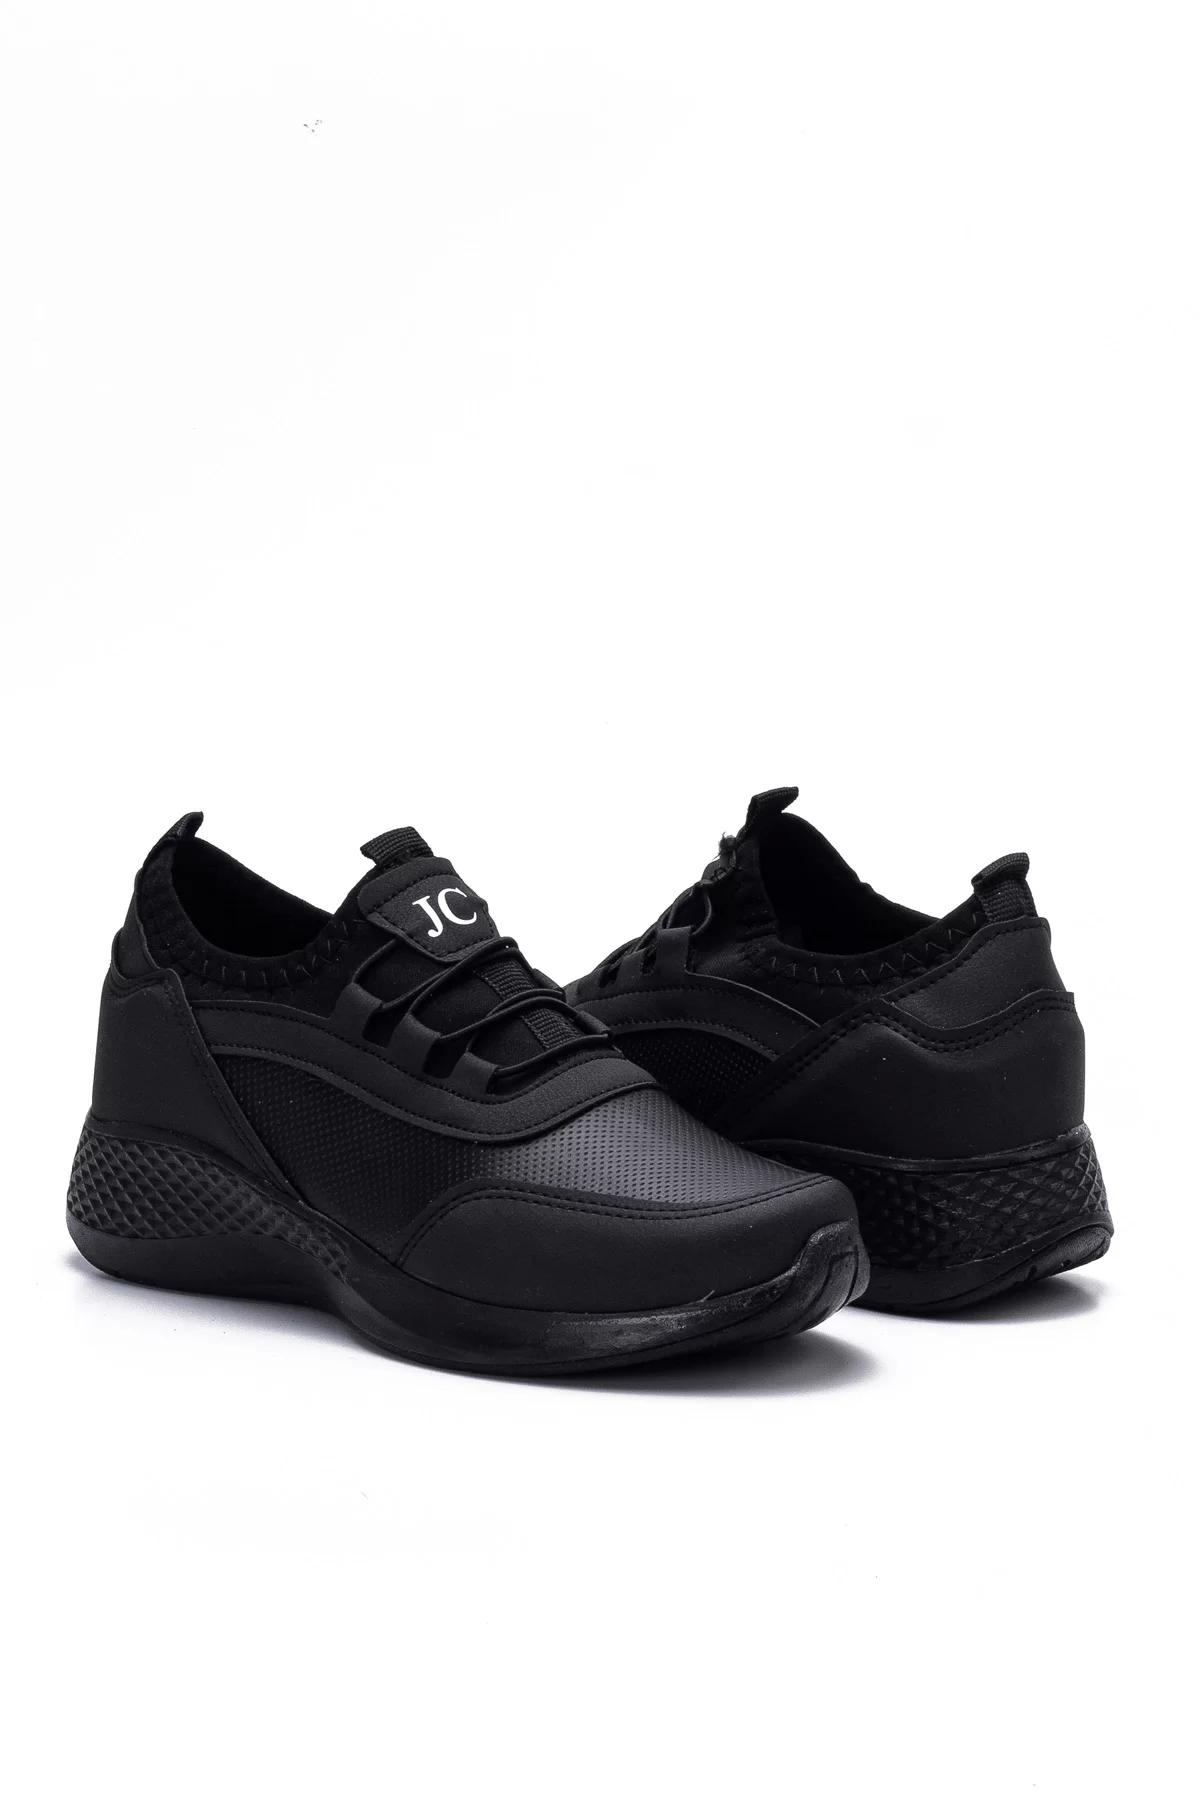 Kadın Sneaker 3005 - Siyah Cilt